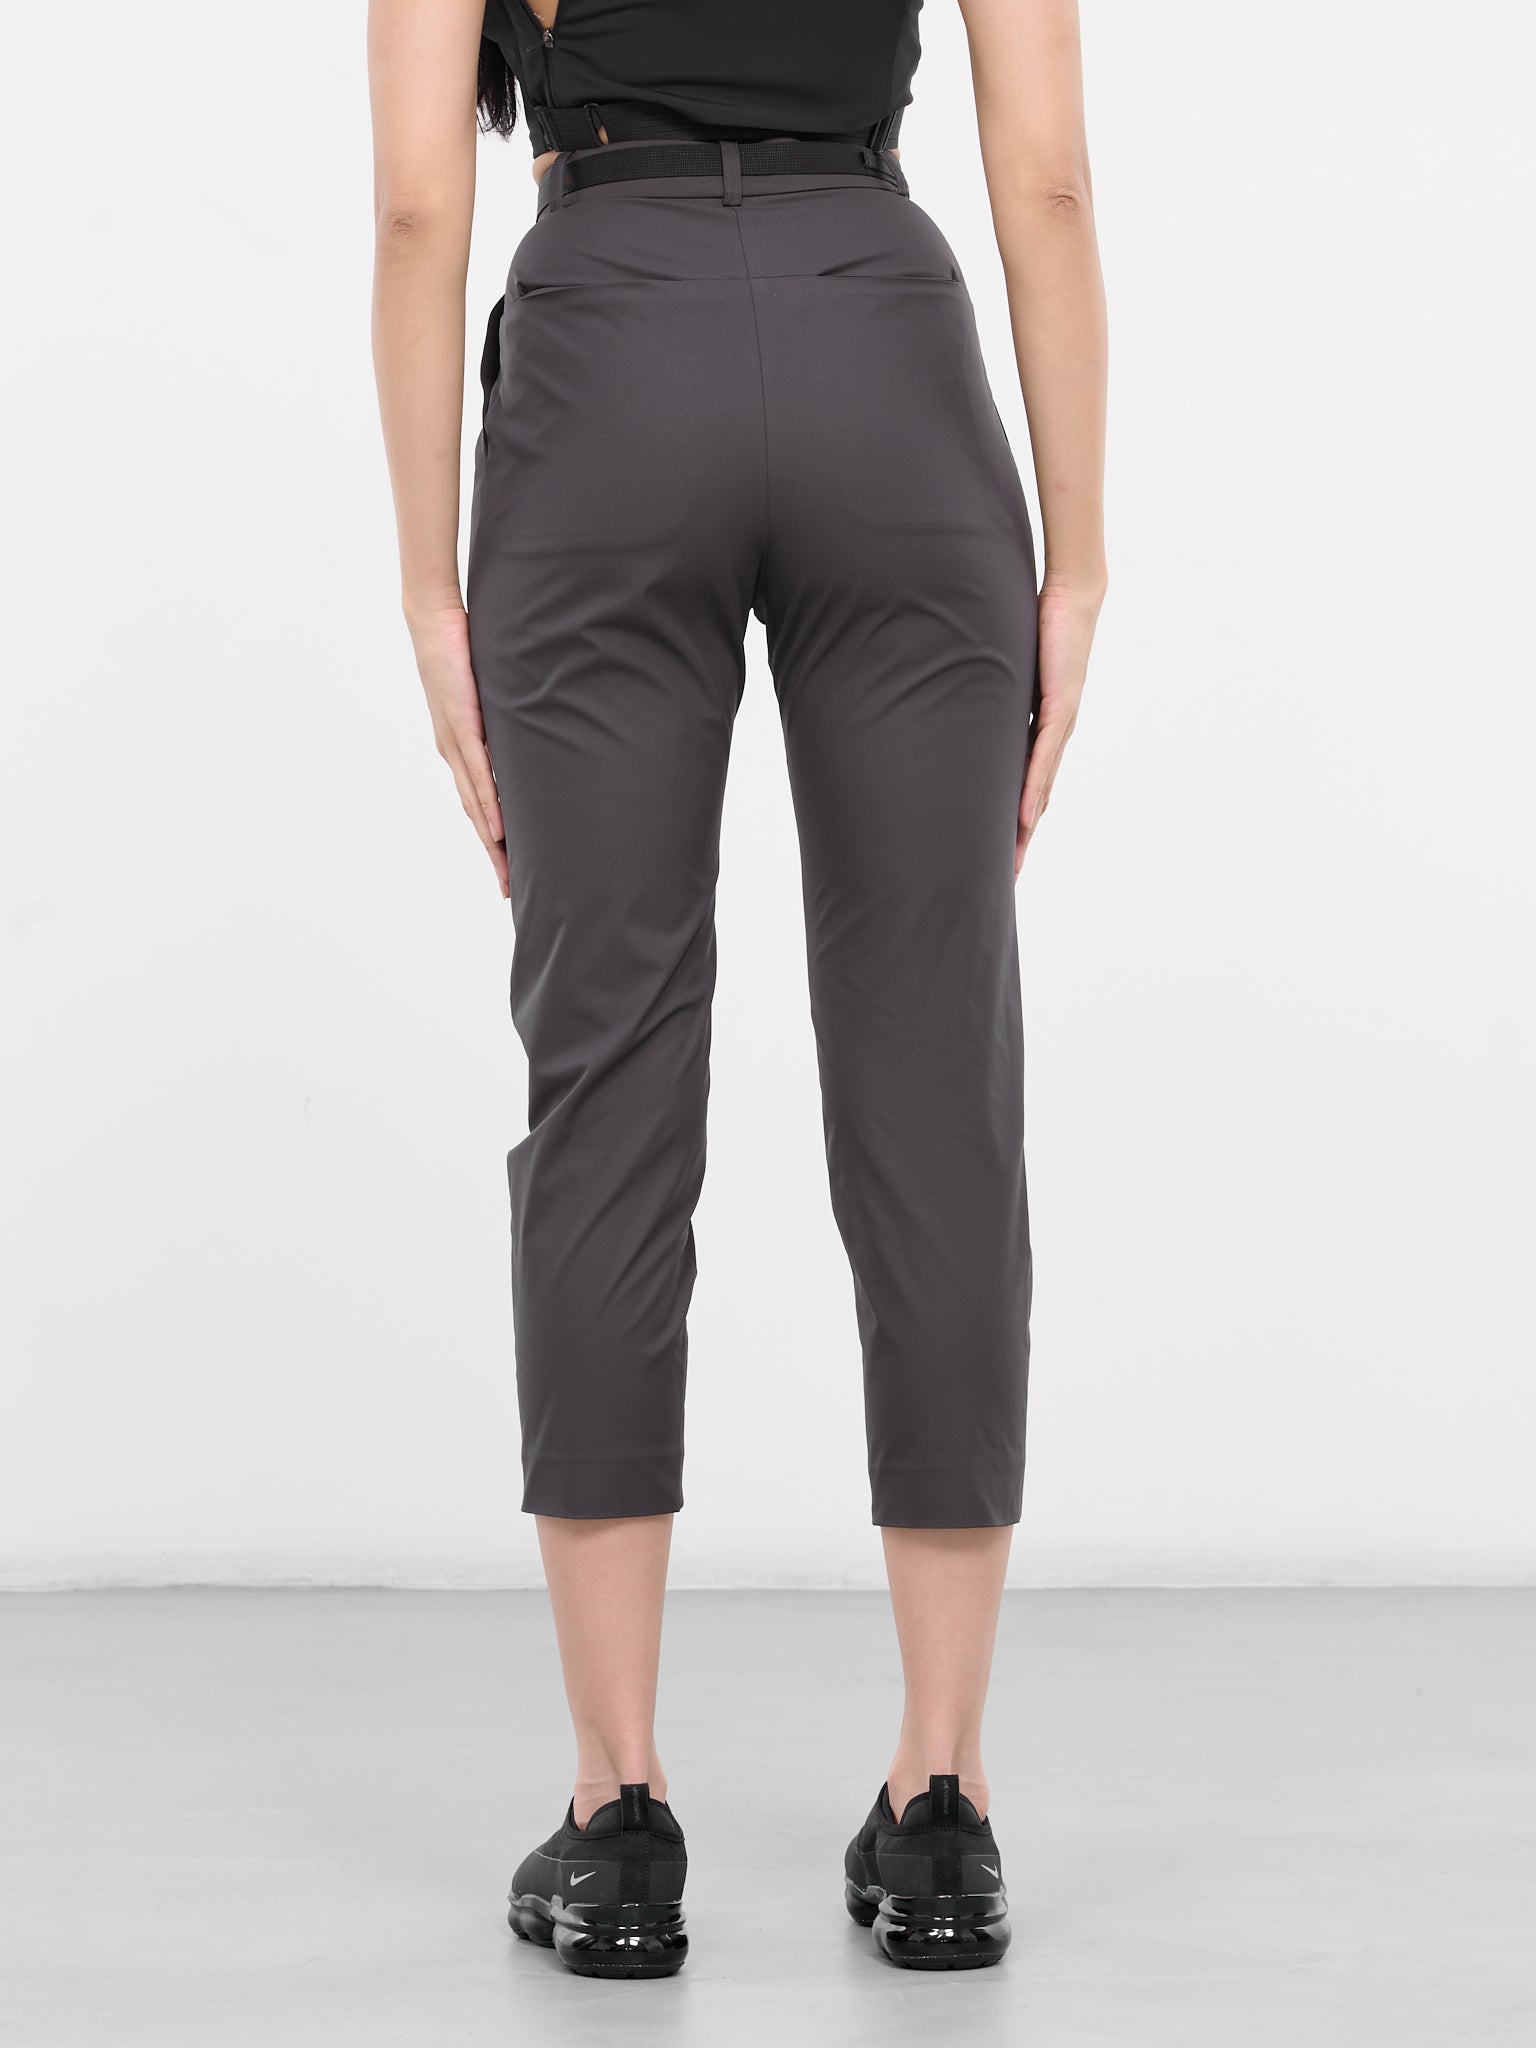 Belted Slim Pants (PT2DG-DARK-GREY)